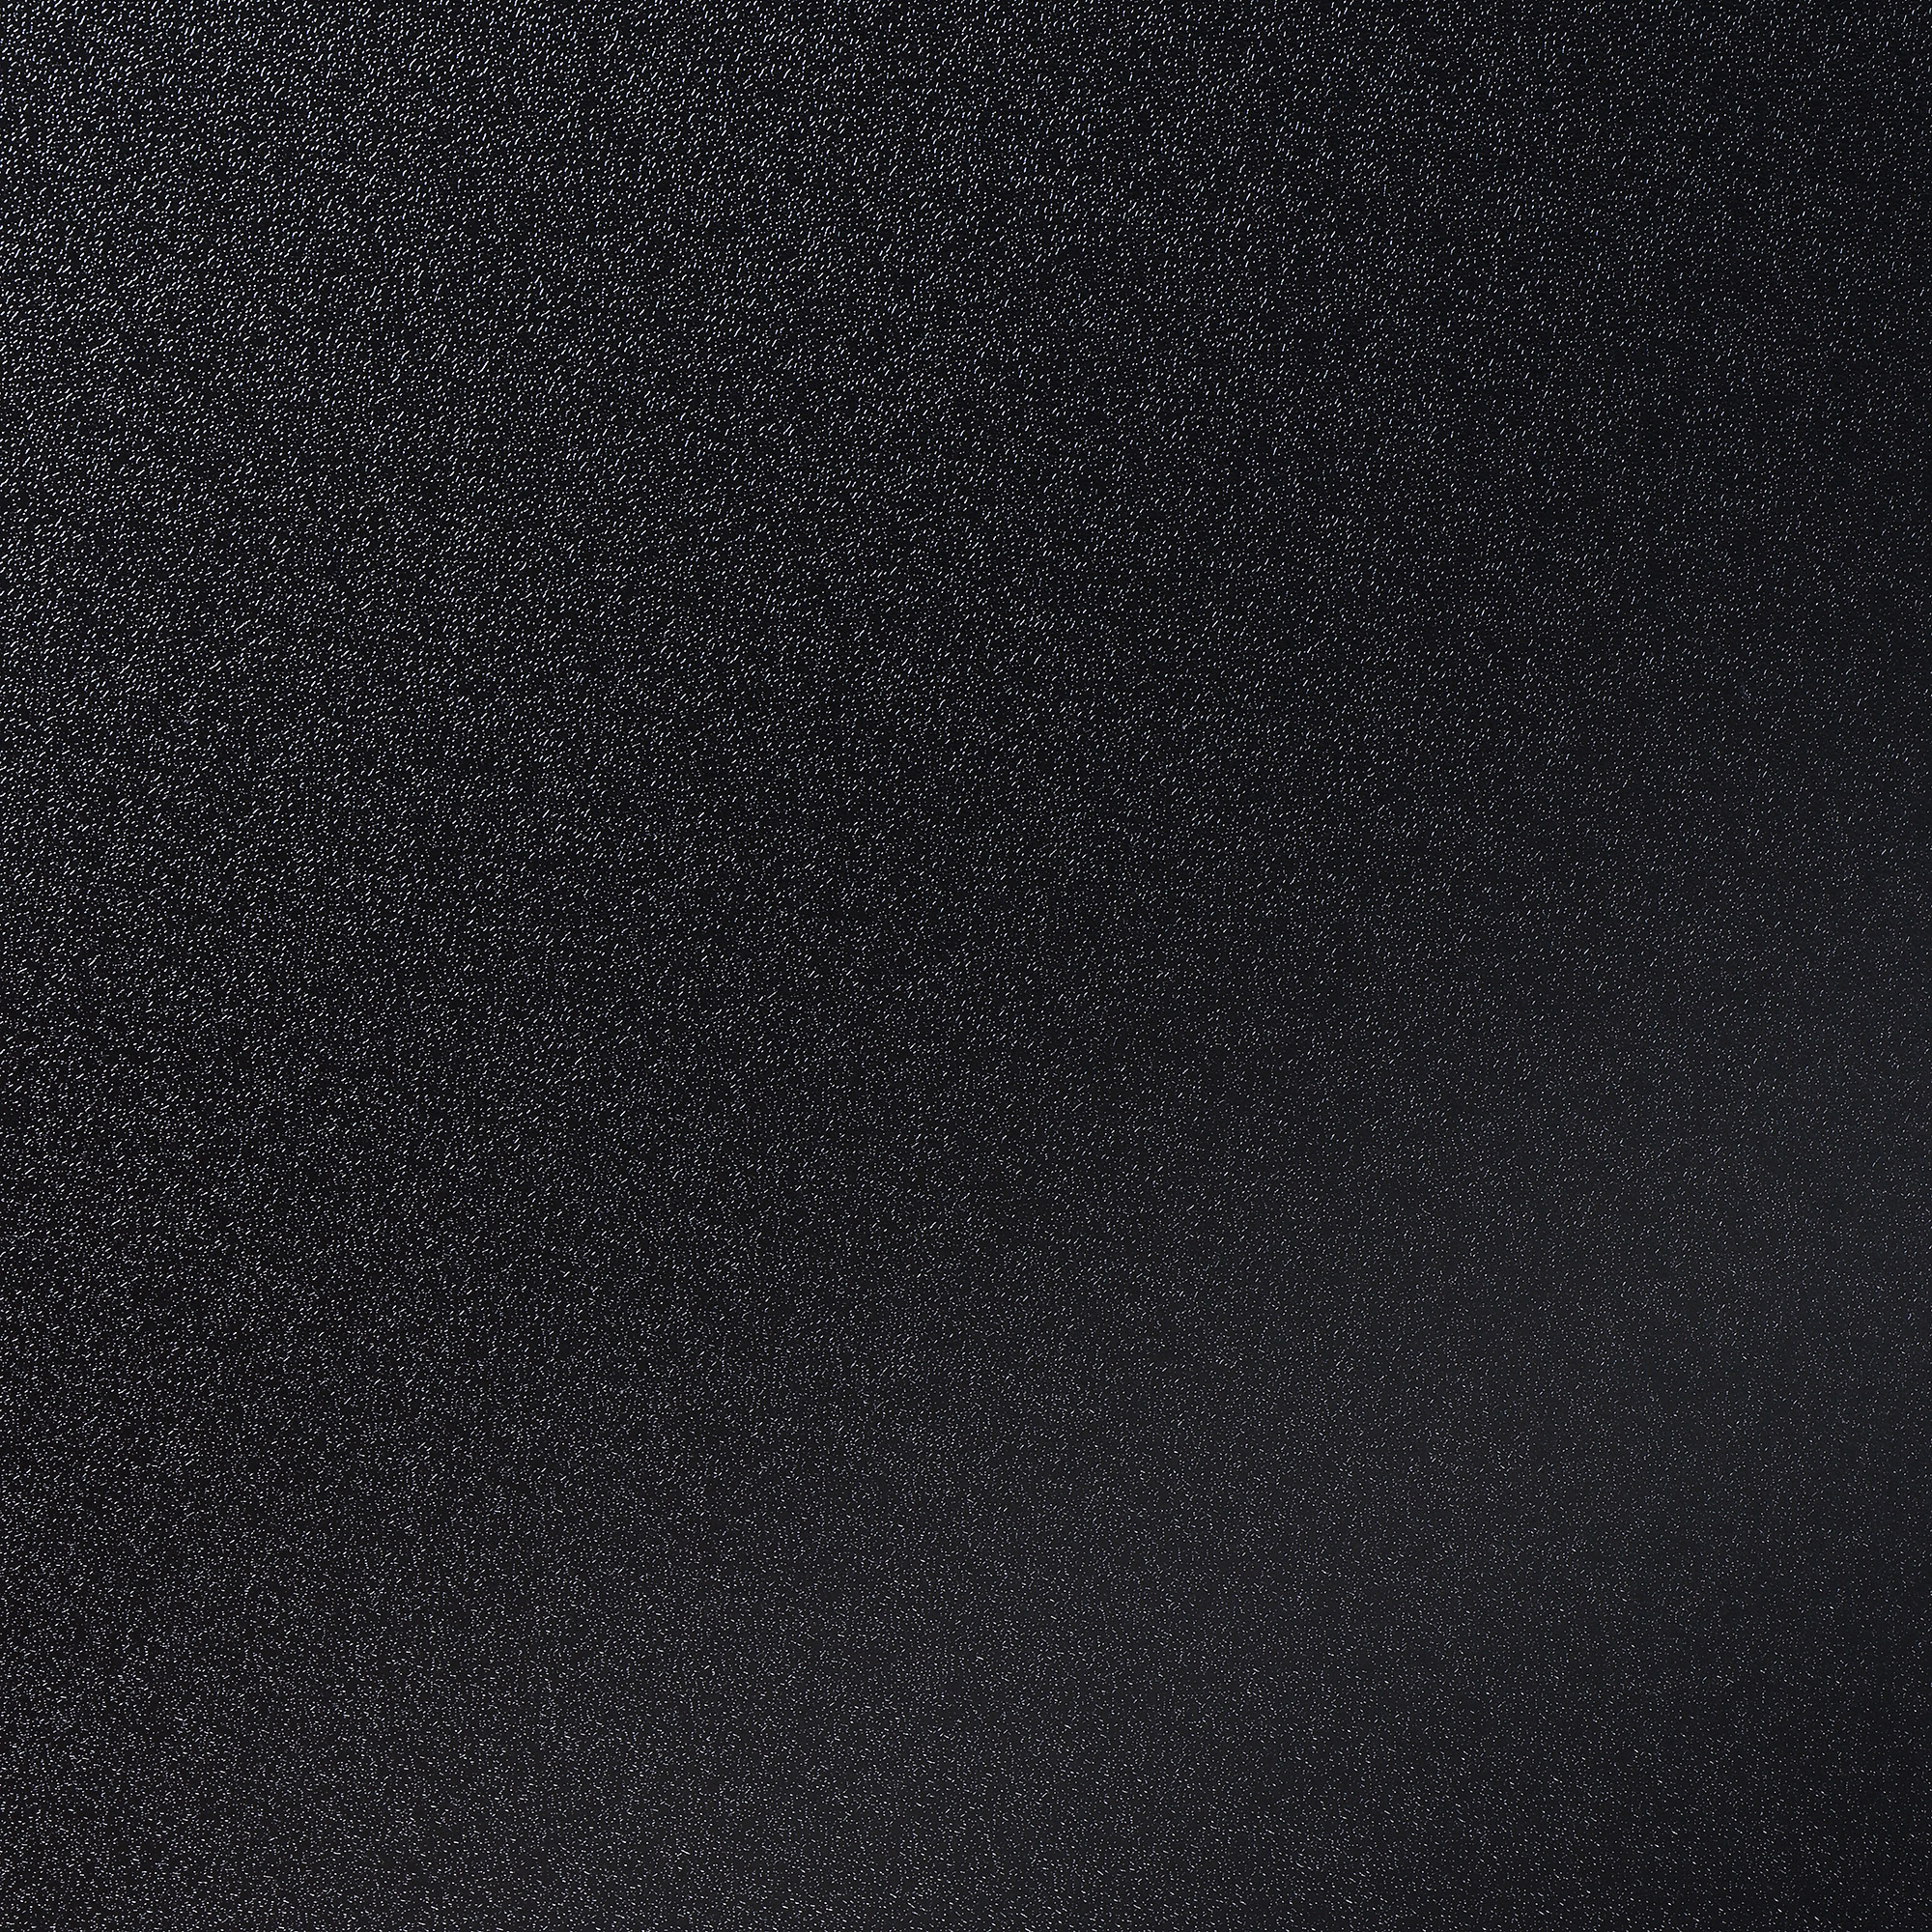 Стол для кемпинга складной Koopman furniture 75x55x25/60cm, цвет черный, размер 75x55x25/60 см - фото 7